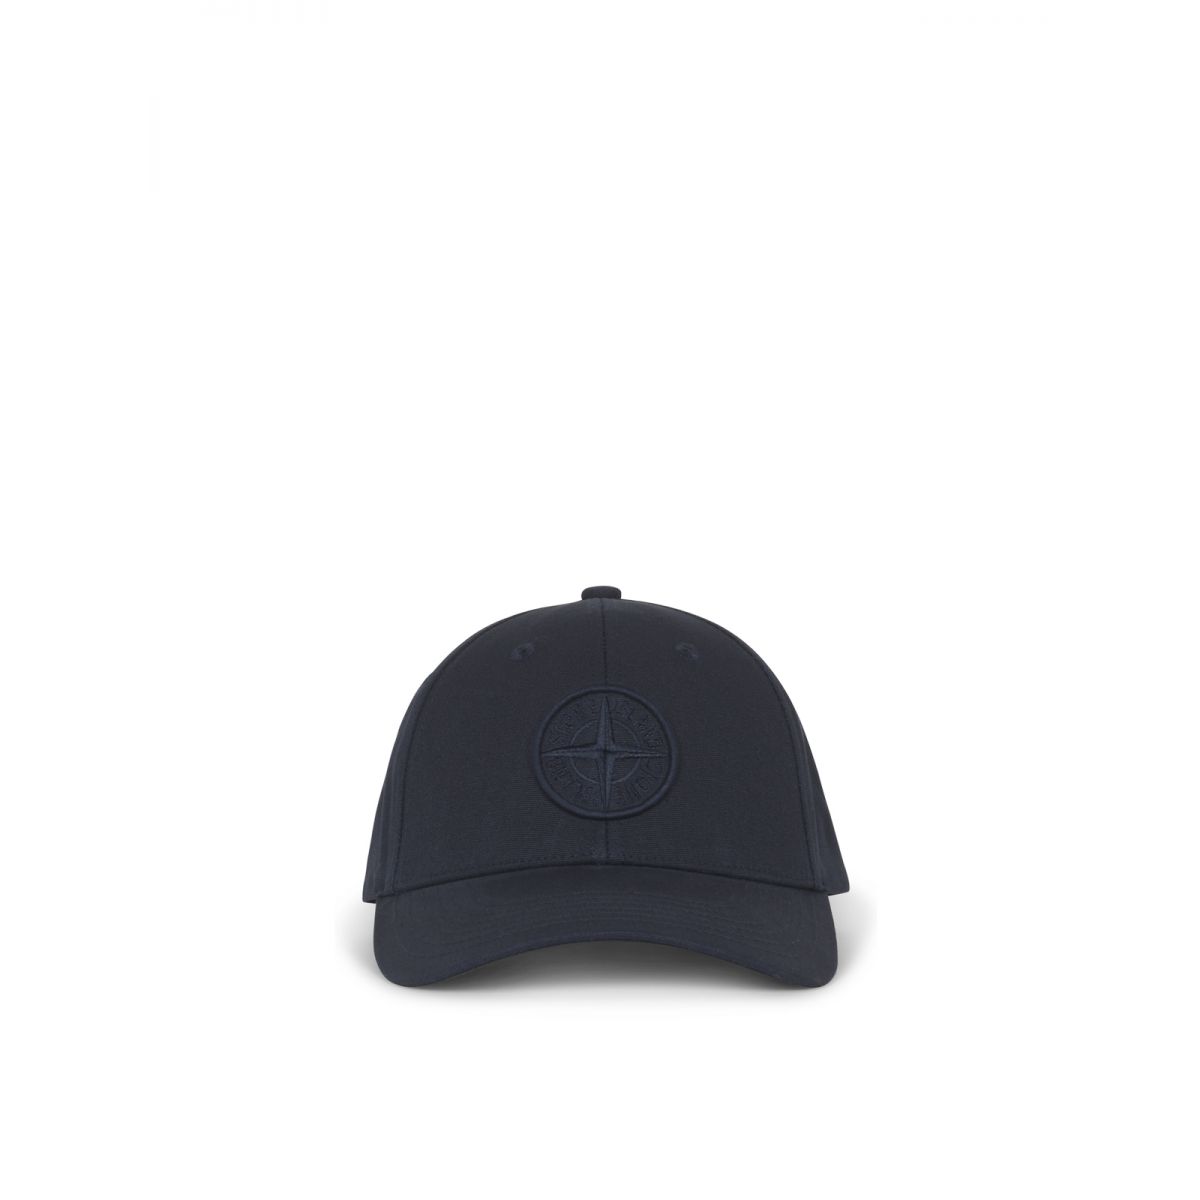 STONE ISLAND - Navy baseball cap with logo